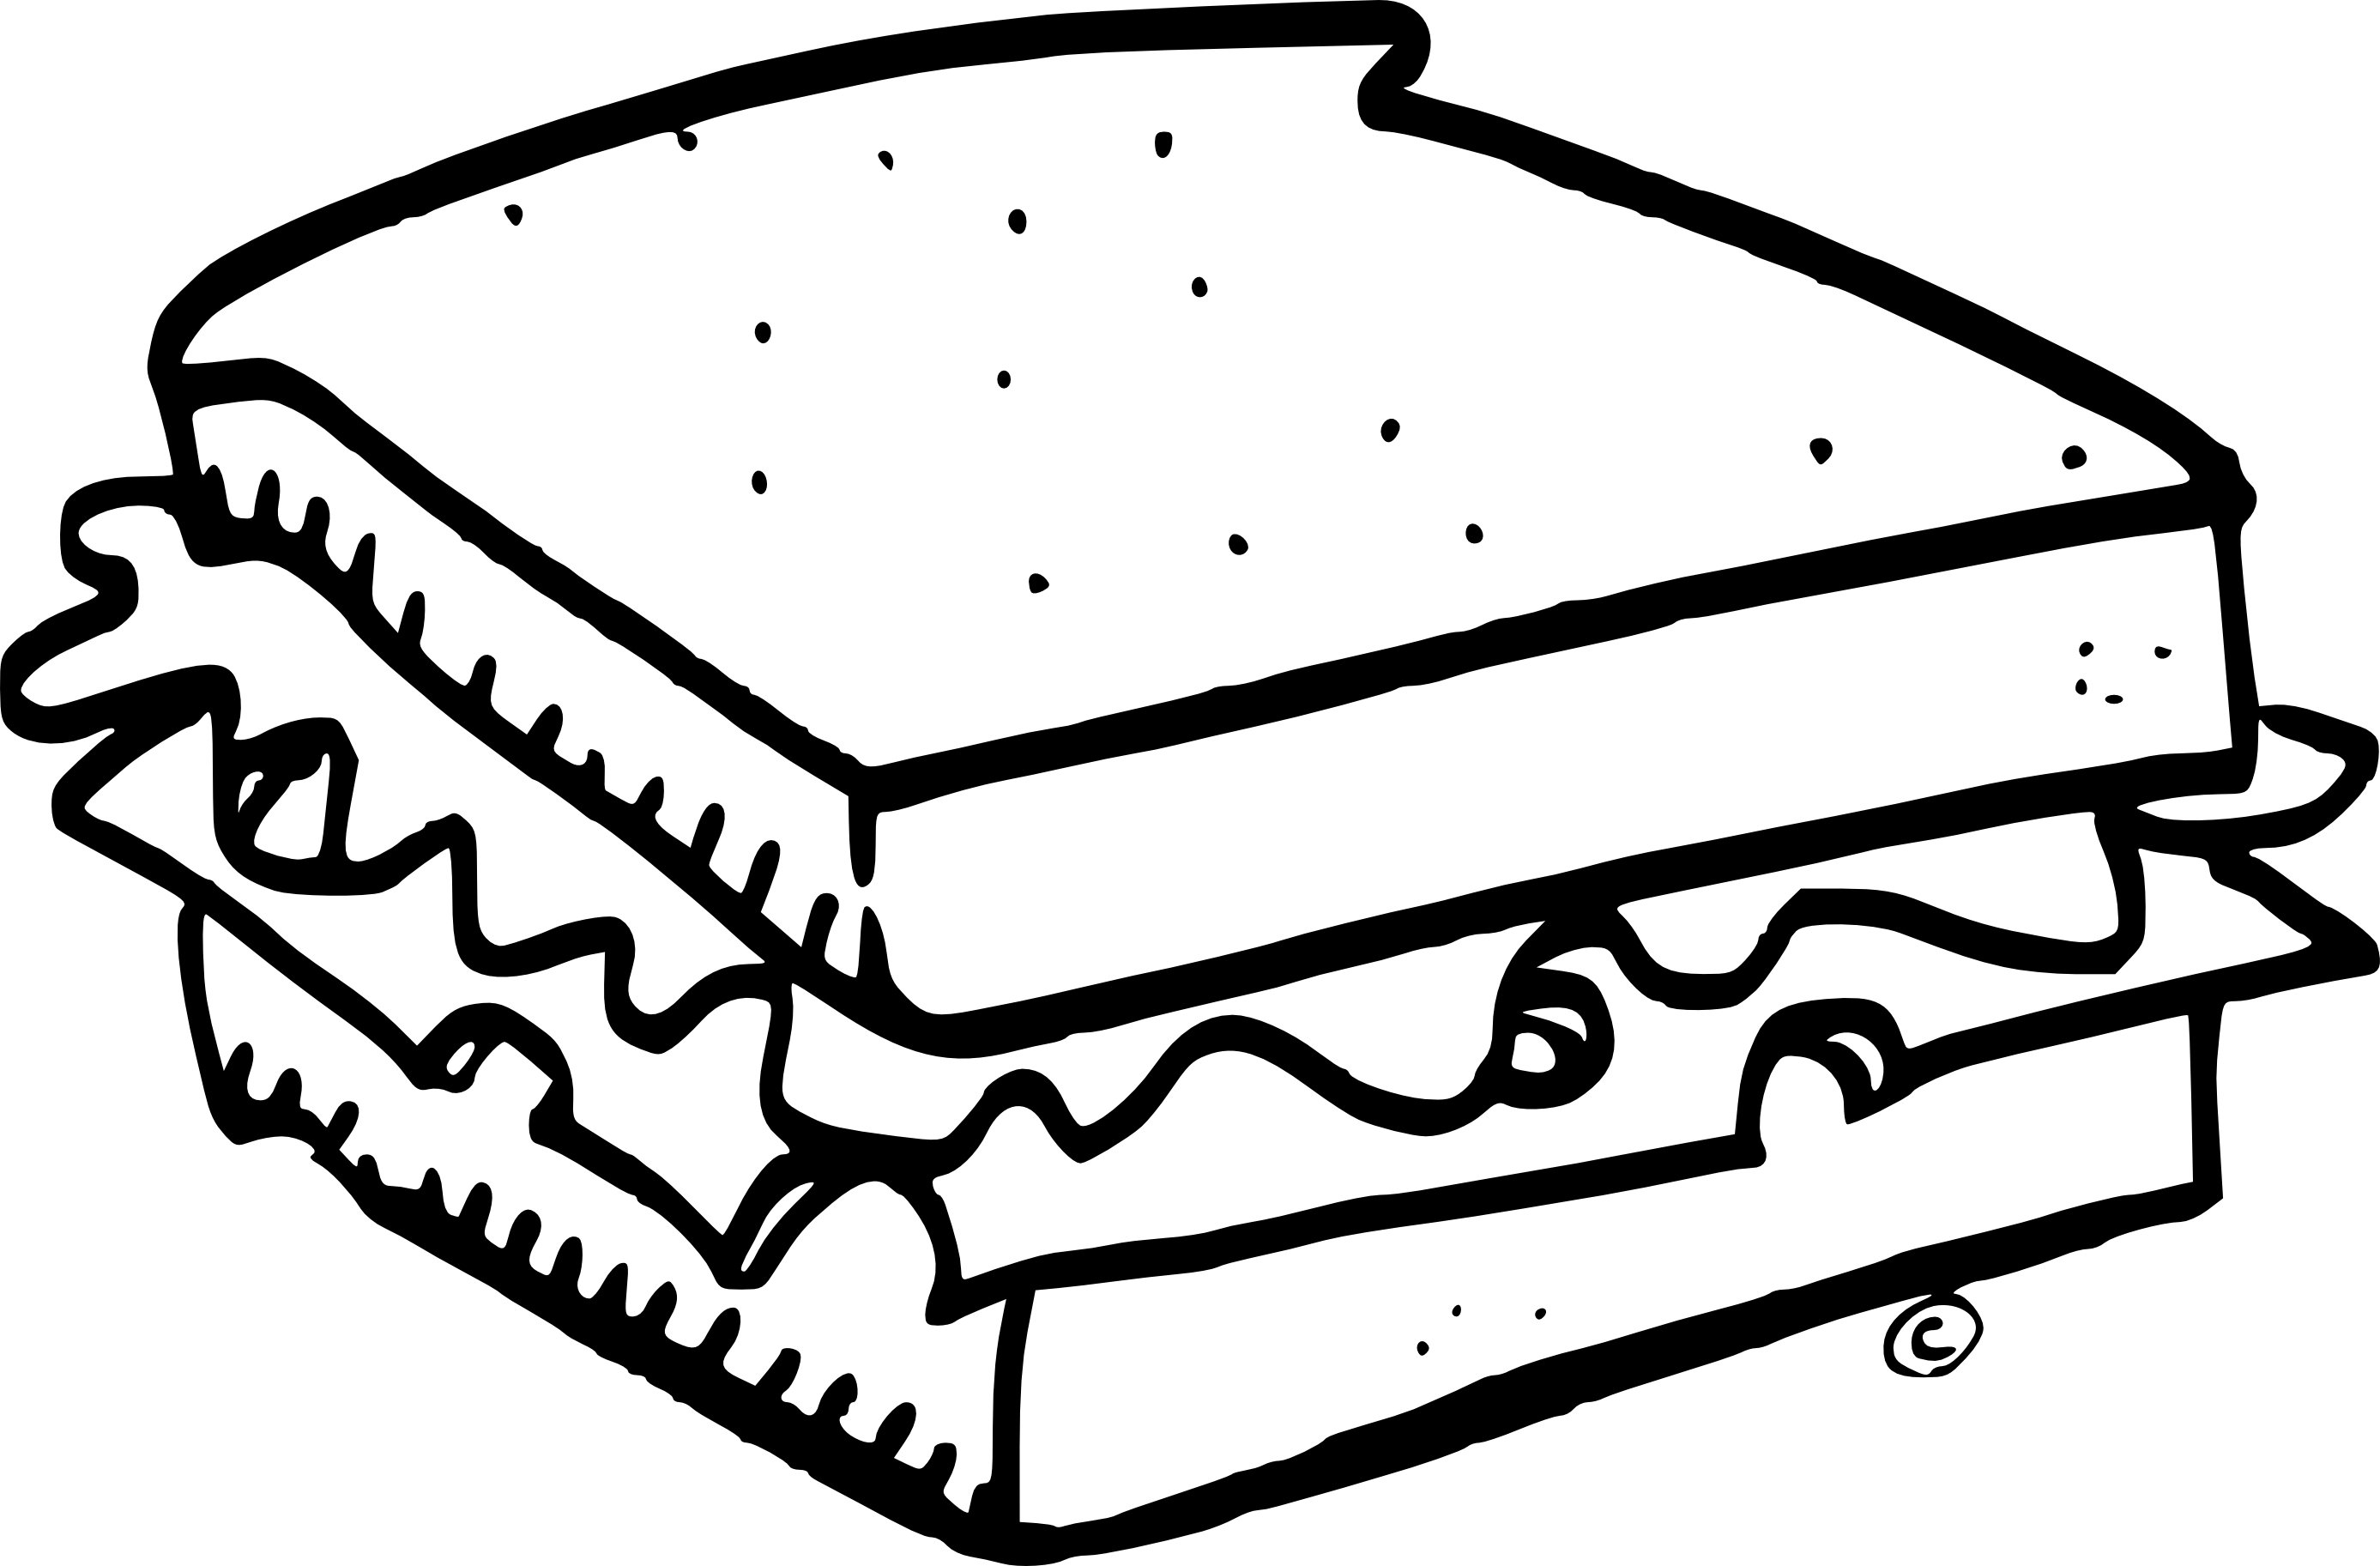 clipart gratuit sandwich - photo #12